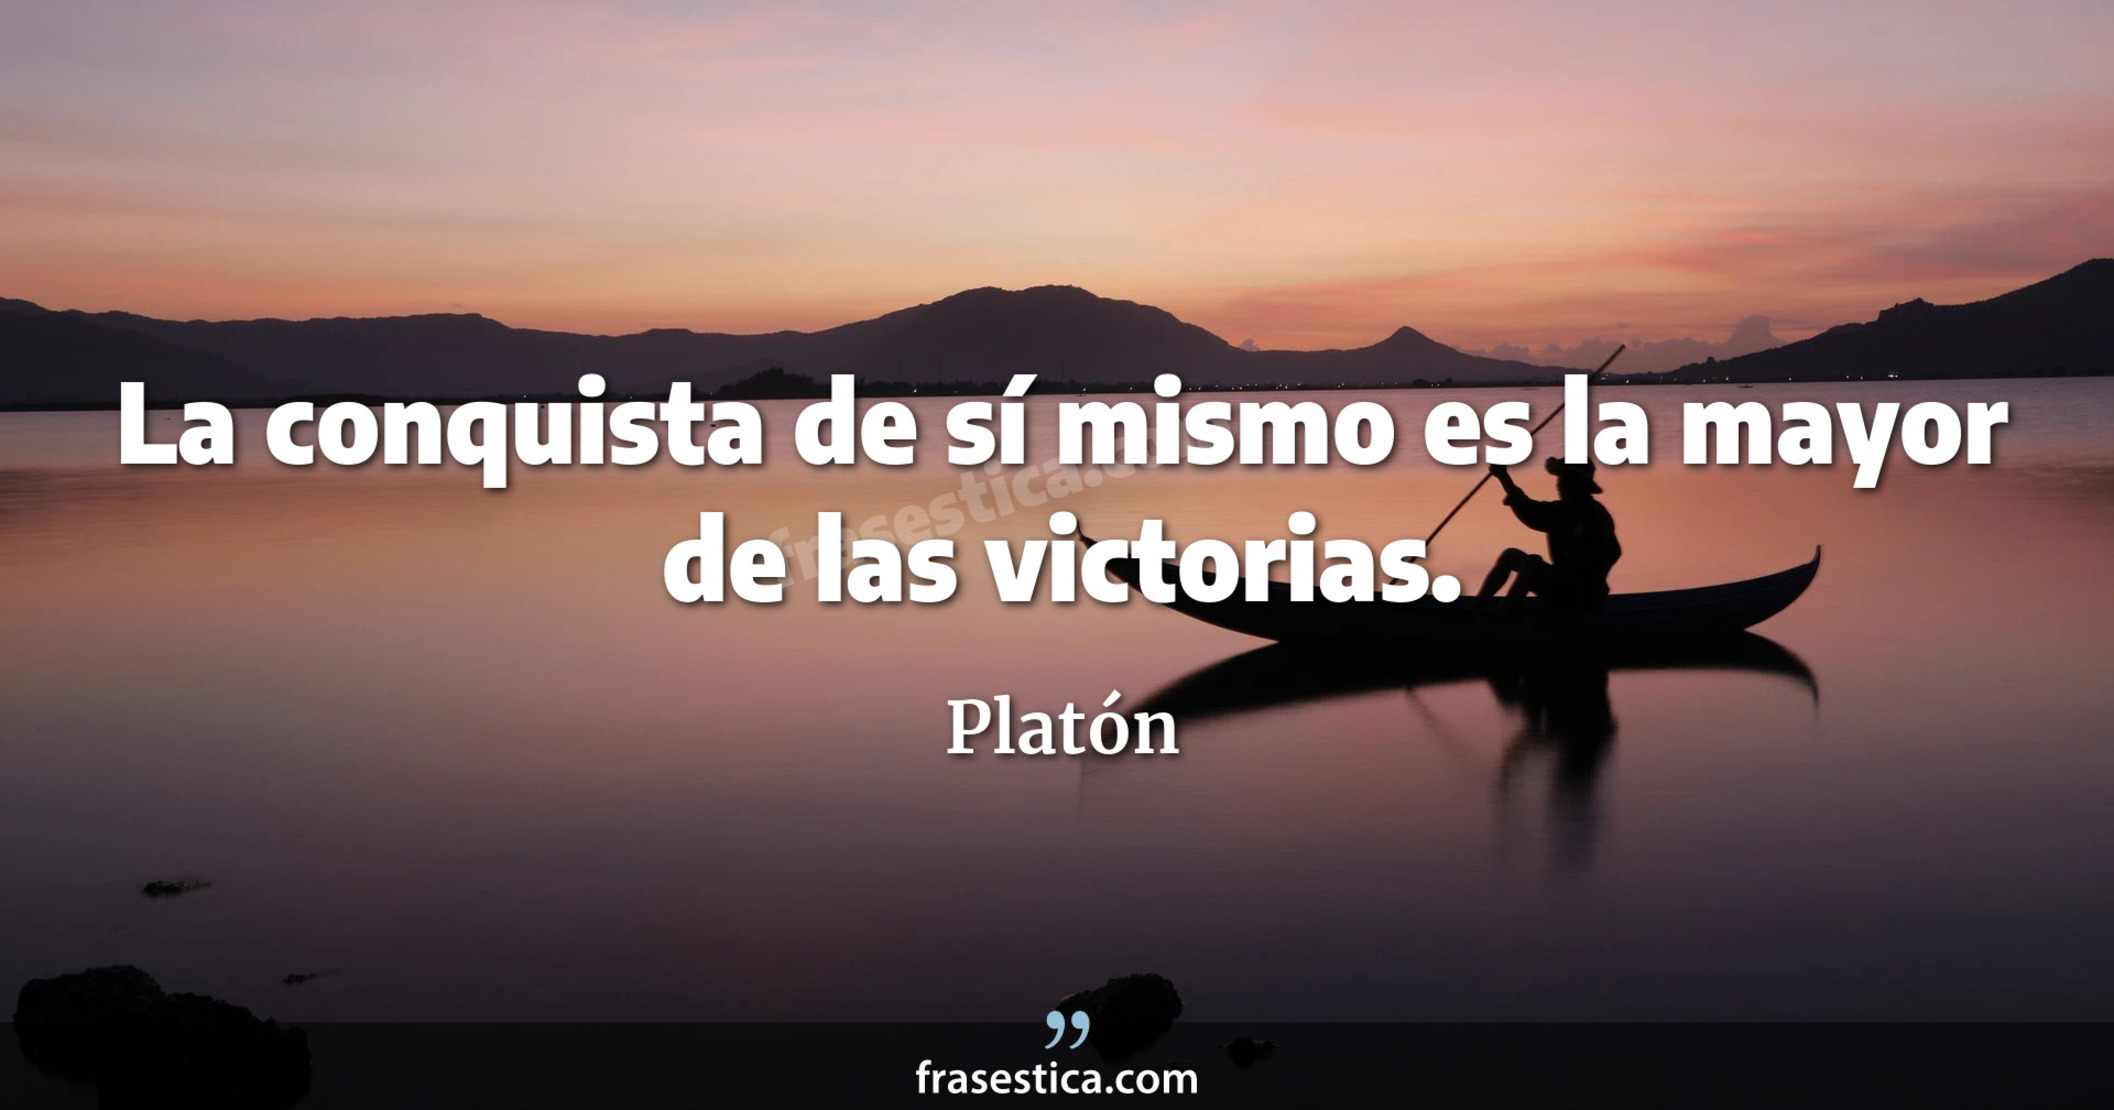 La conquista de sí mismo es la mayor de las victorias. - Platón